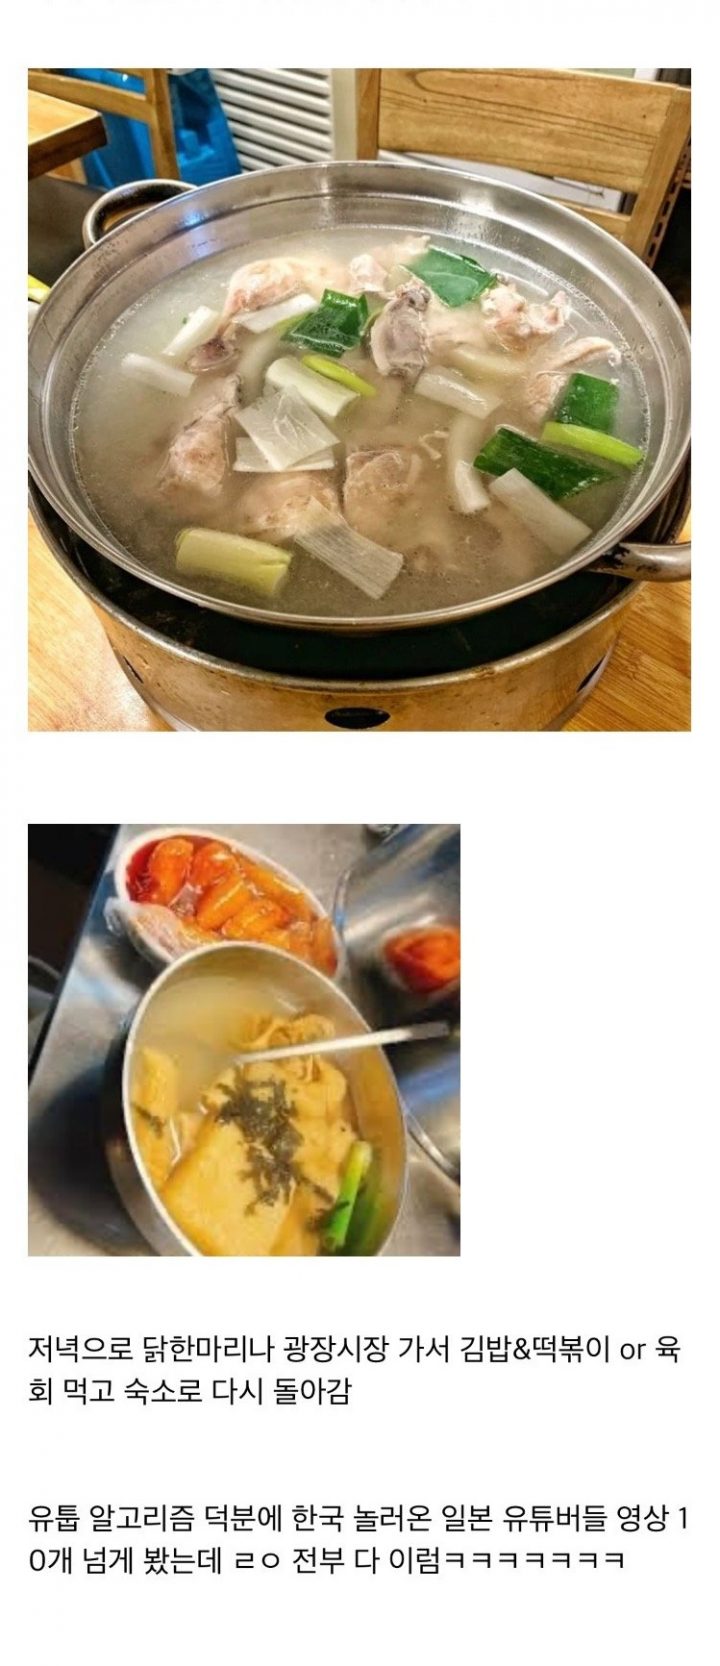 한국 여행 온 일본인들이 편의점에서 반드시 먹는다는 음식의 정체 (+식사)